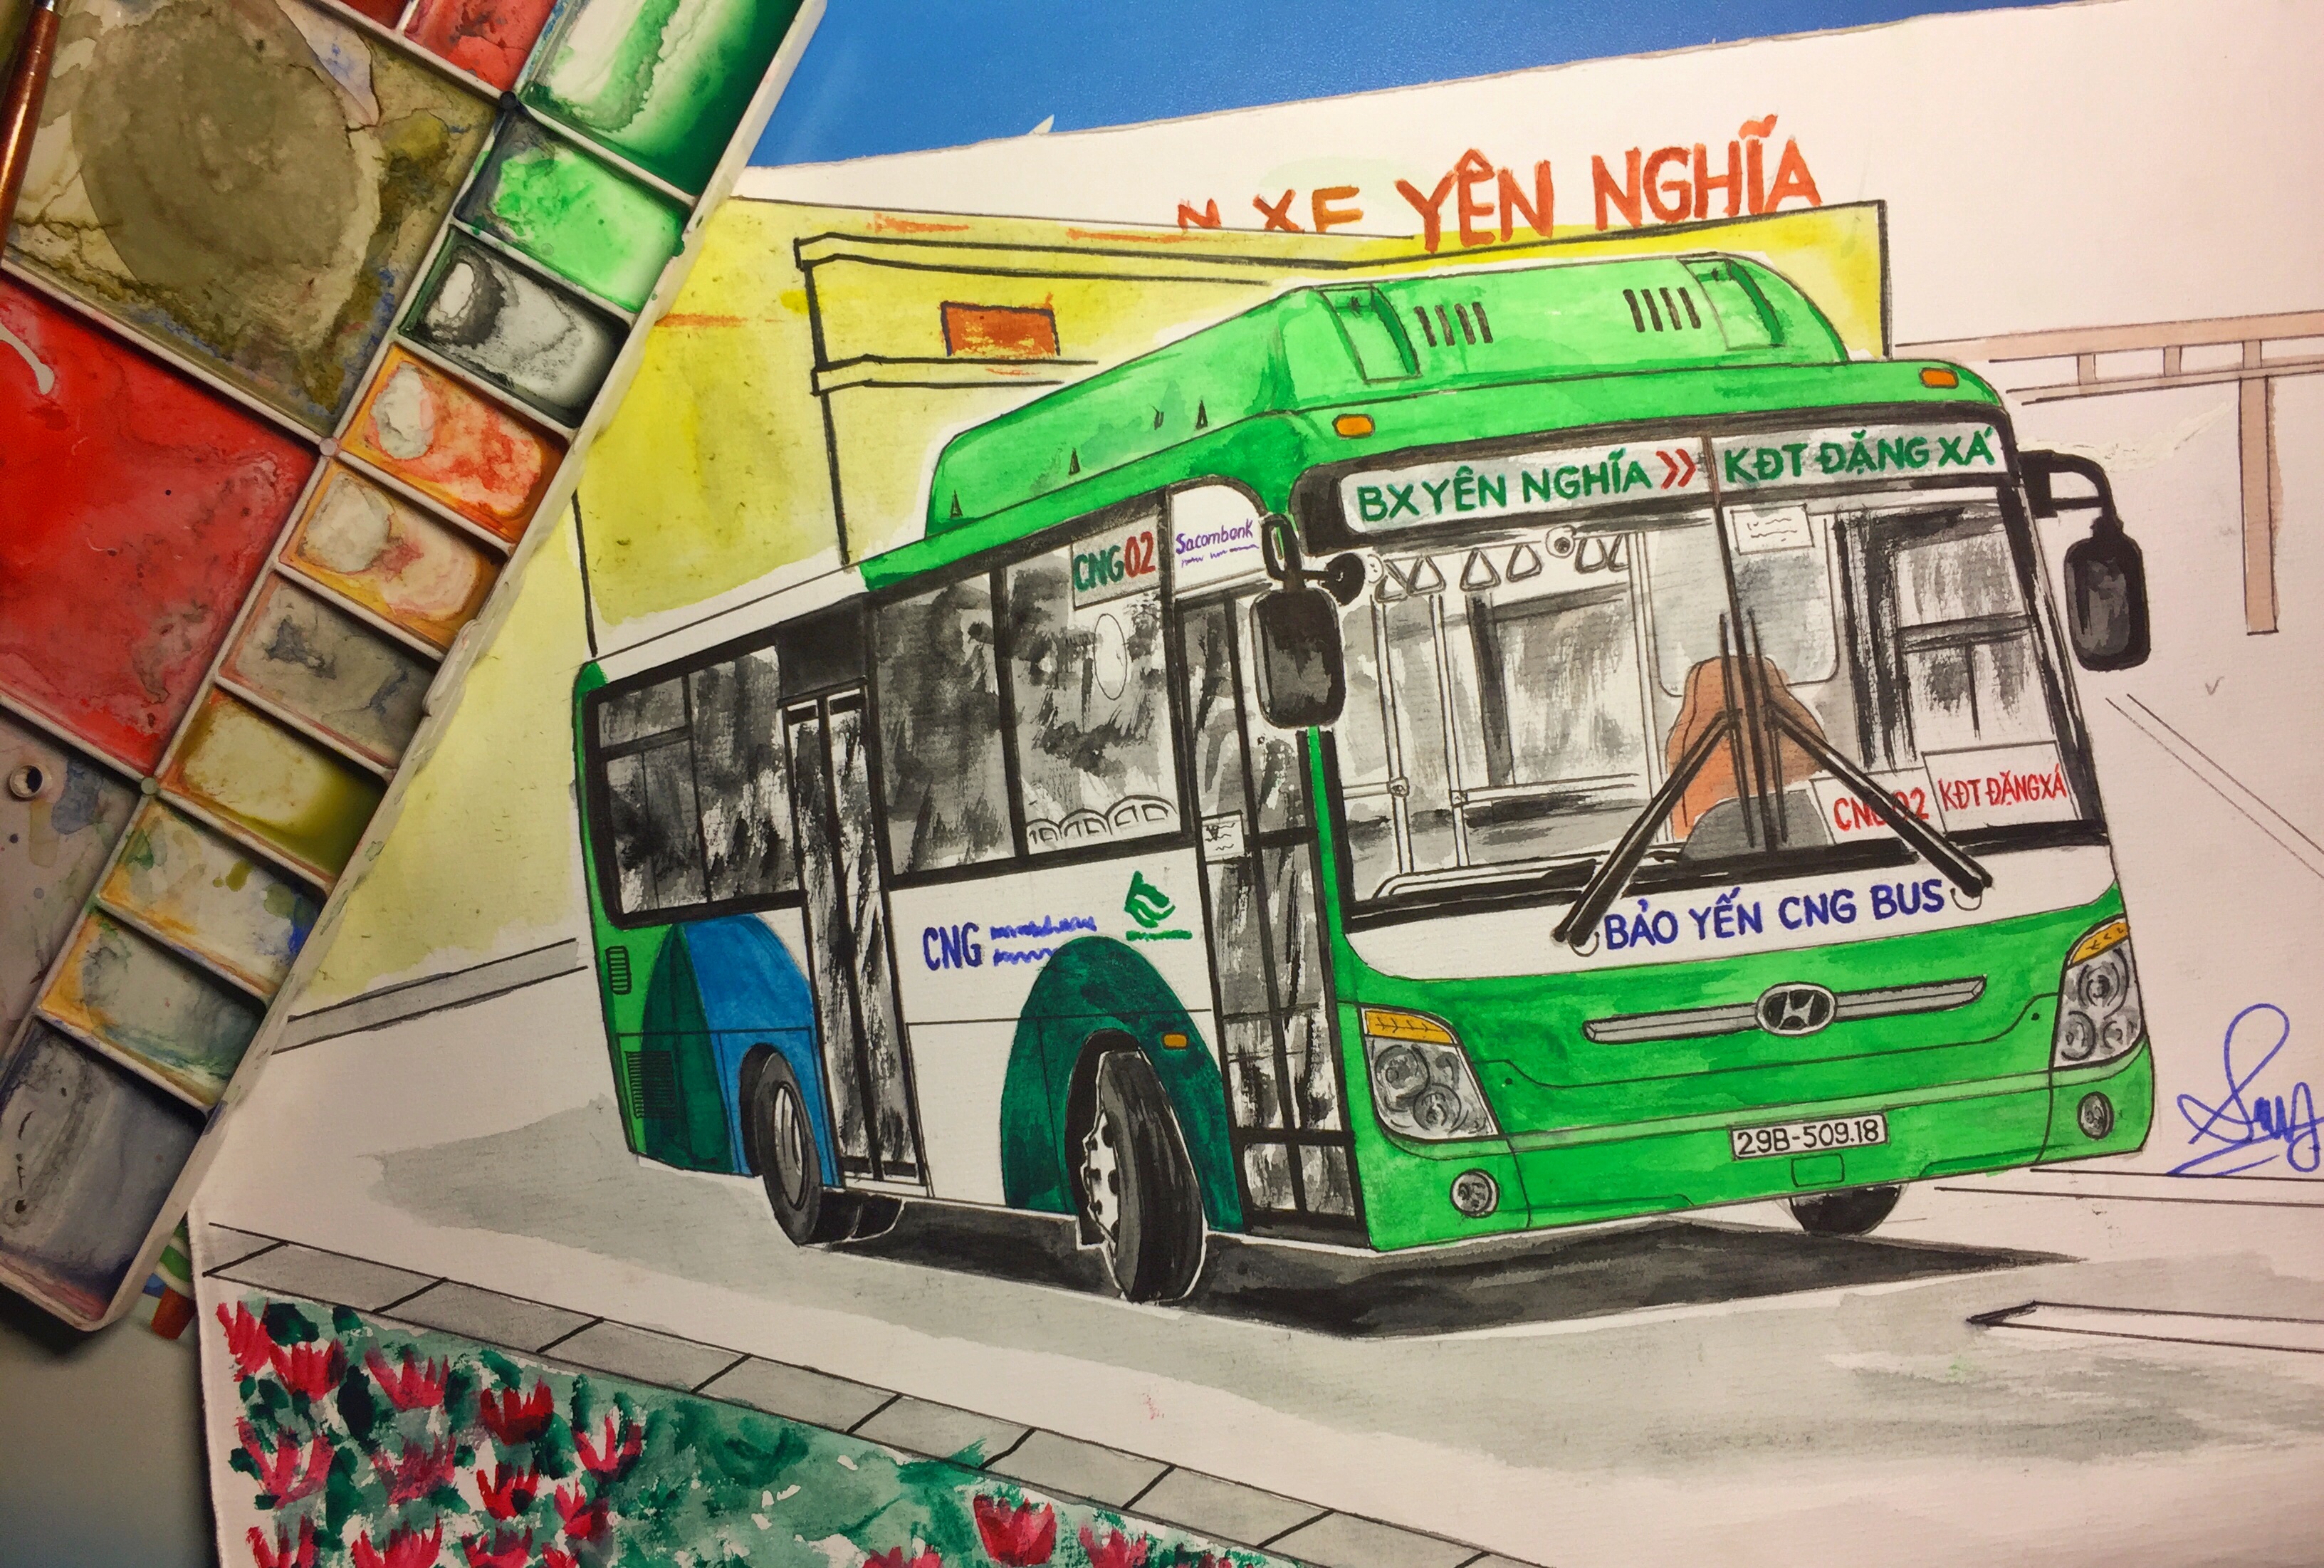 Bức tranh vẽ xe buýt Hà Nội sẽ mang lại cho bạn một trải nghiệm thú vị về sự lưu thông đông đúc trên đường phố thành phố. Thưởng thức các chi tiết tinh sảo trên bức tranh, bạn sẽ hiểu rõ hơn về sự hỗn hợp giữa kiến trúc và lưu thông trên đường phố Hà Nội.